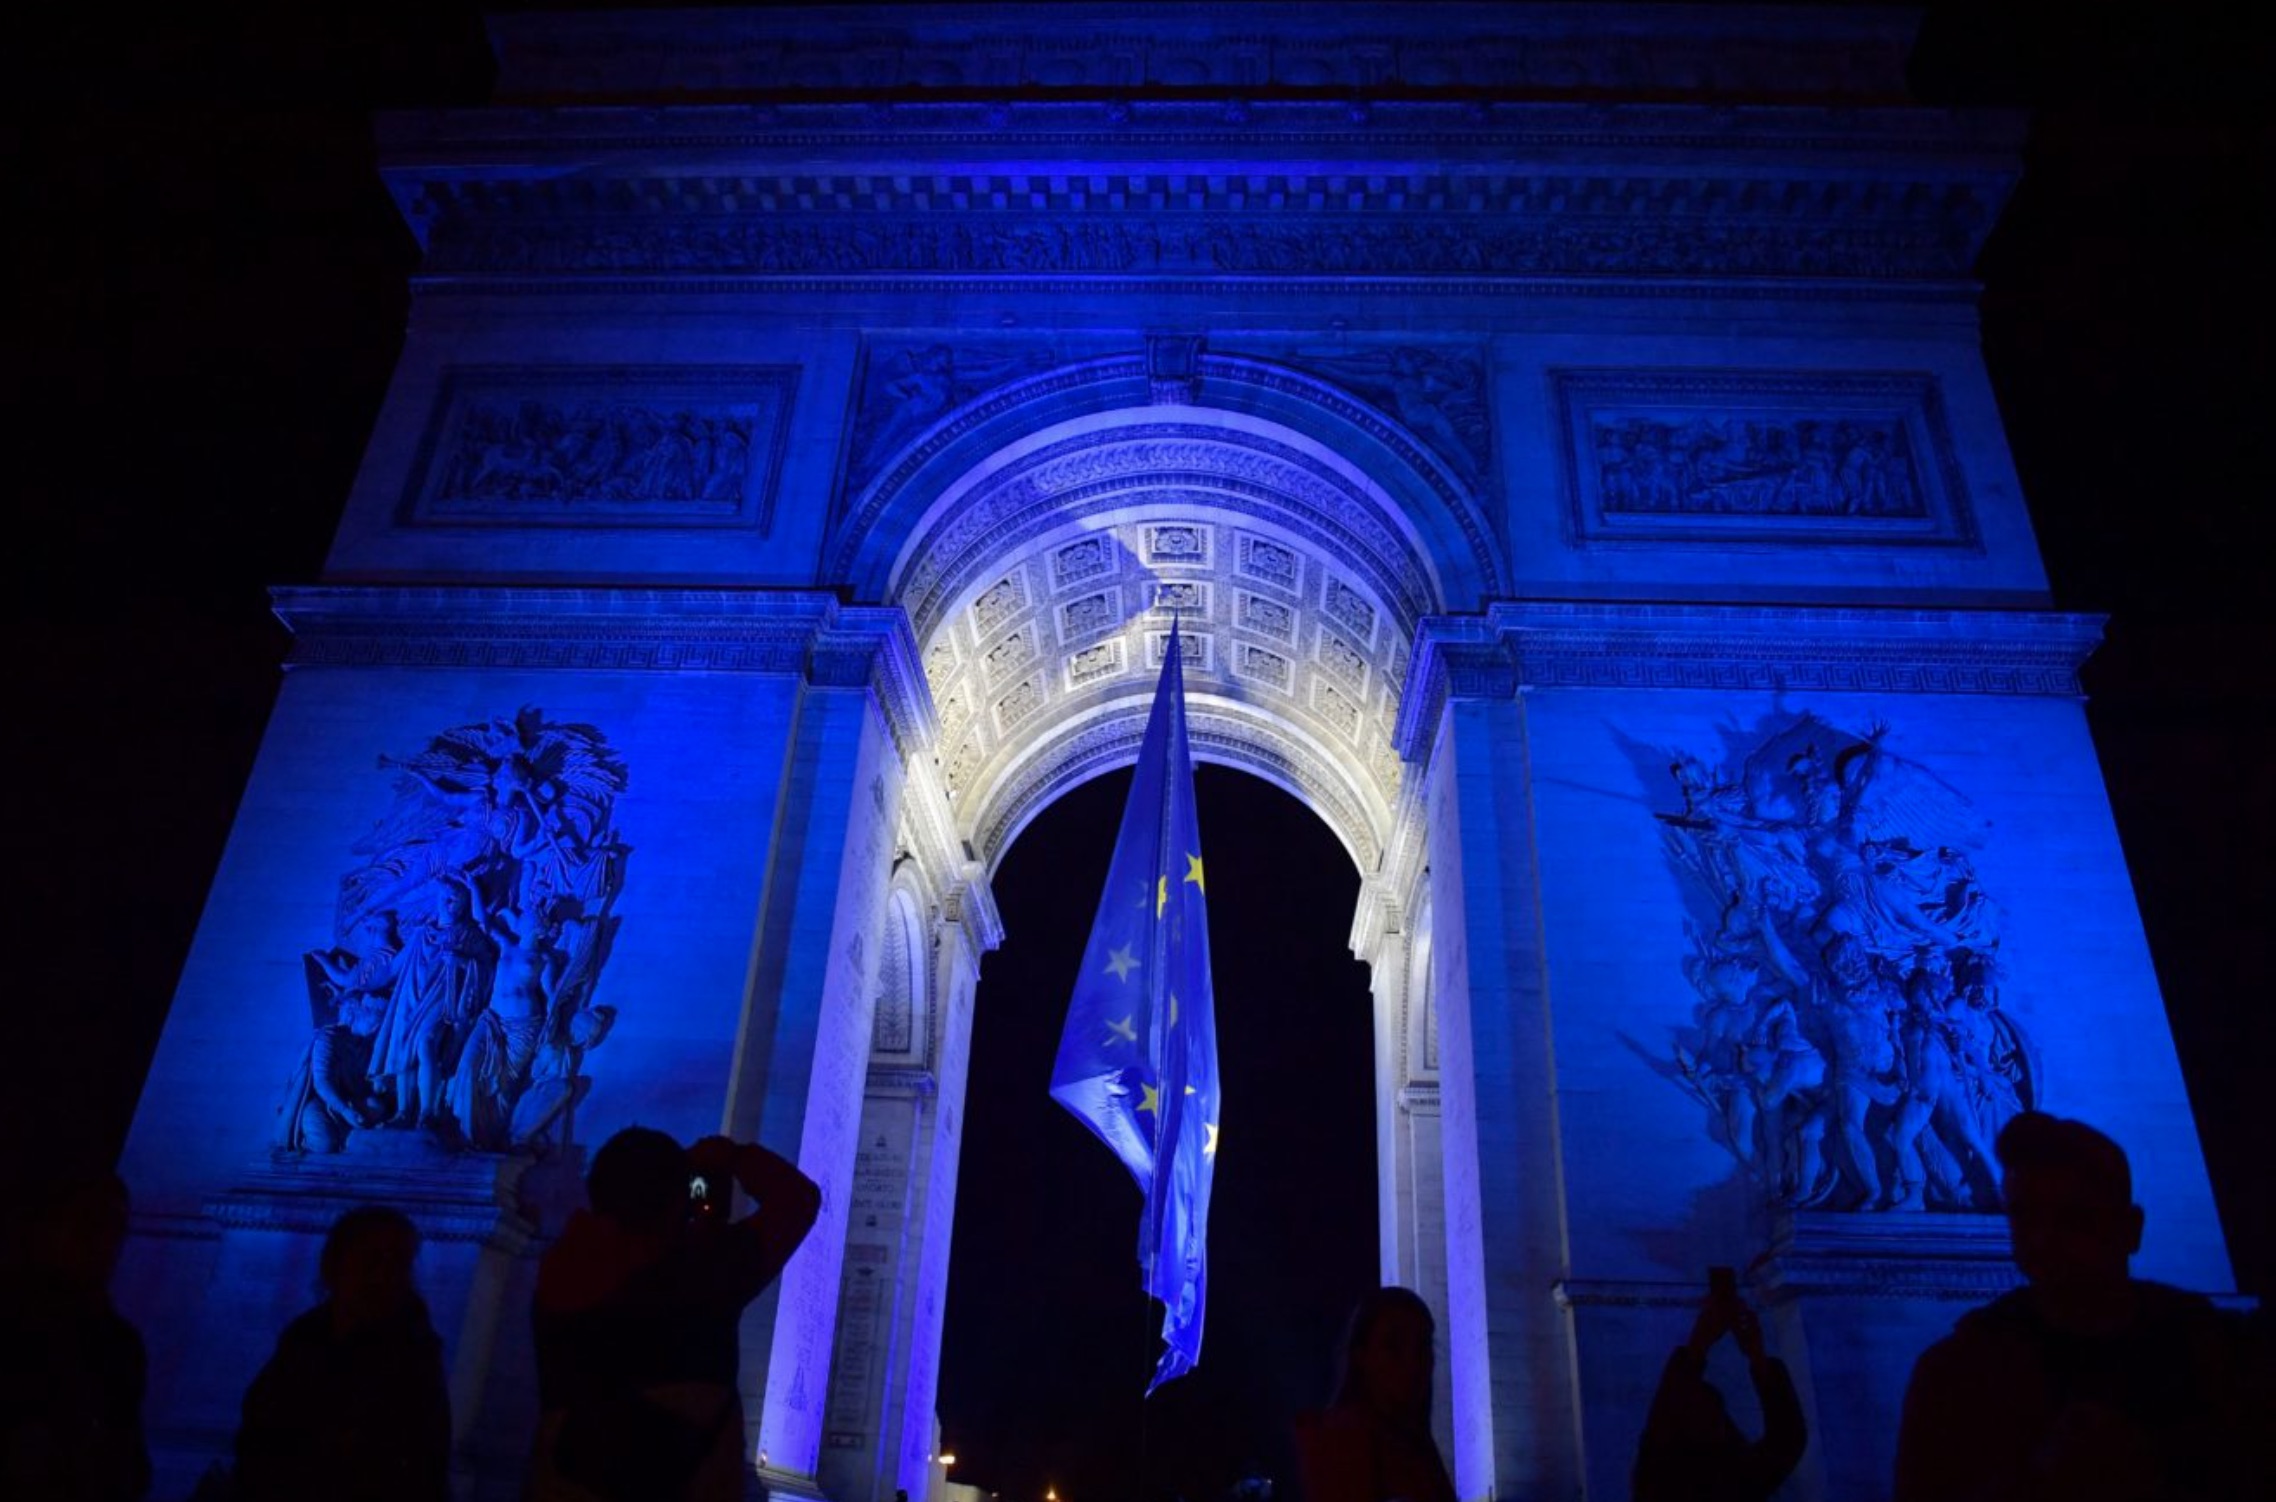 Le drapeau de l'UE a été placé temporairement sous l'Arc de Triomphe à Paris pour marquer le début de la présidence française du Conseil de l'UE.